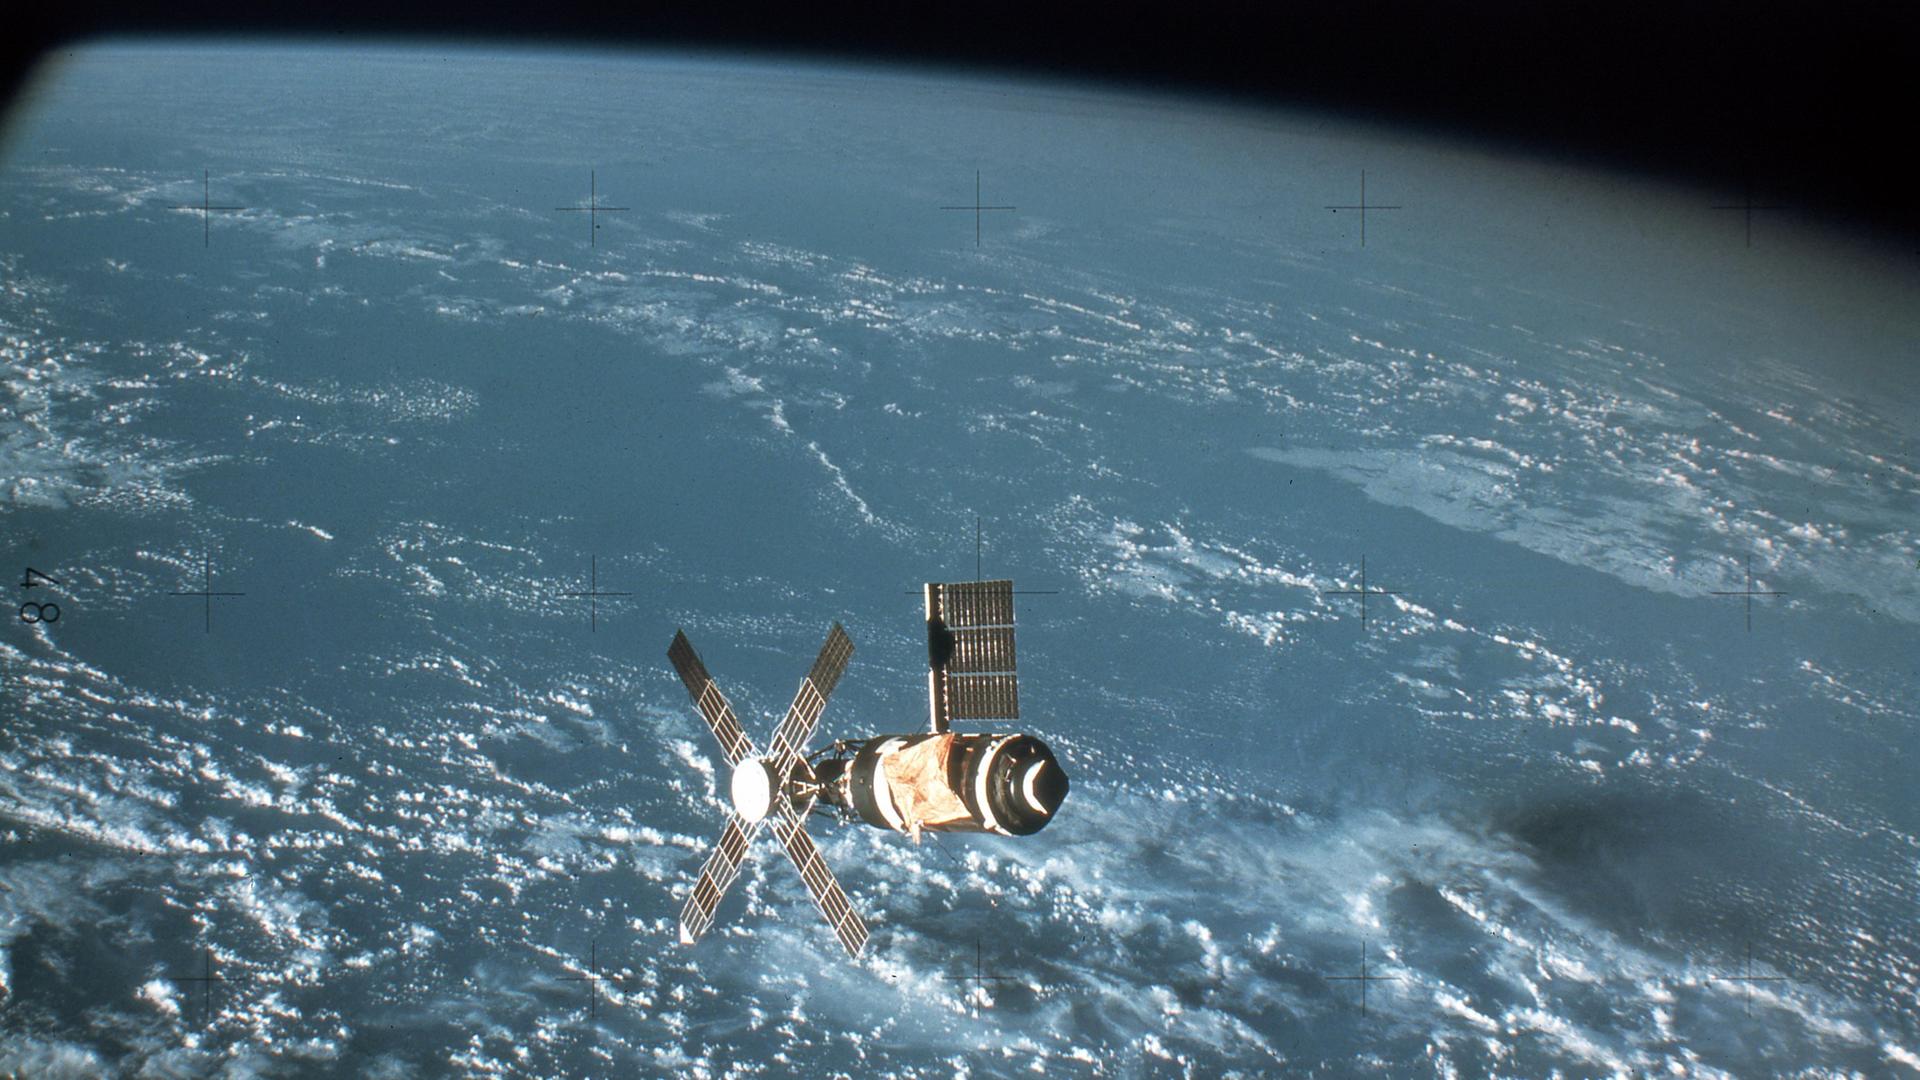 Die amerikanische Raumstation Skylab über die Erde schwebend. Das Foto wurde von der ersten Skylab-Besatzung aufgenommen, als diese zur Erde zurückkehrte. (undatierte Aufnahme)